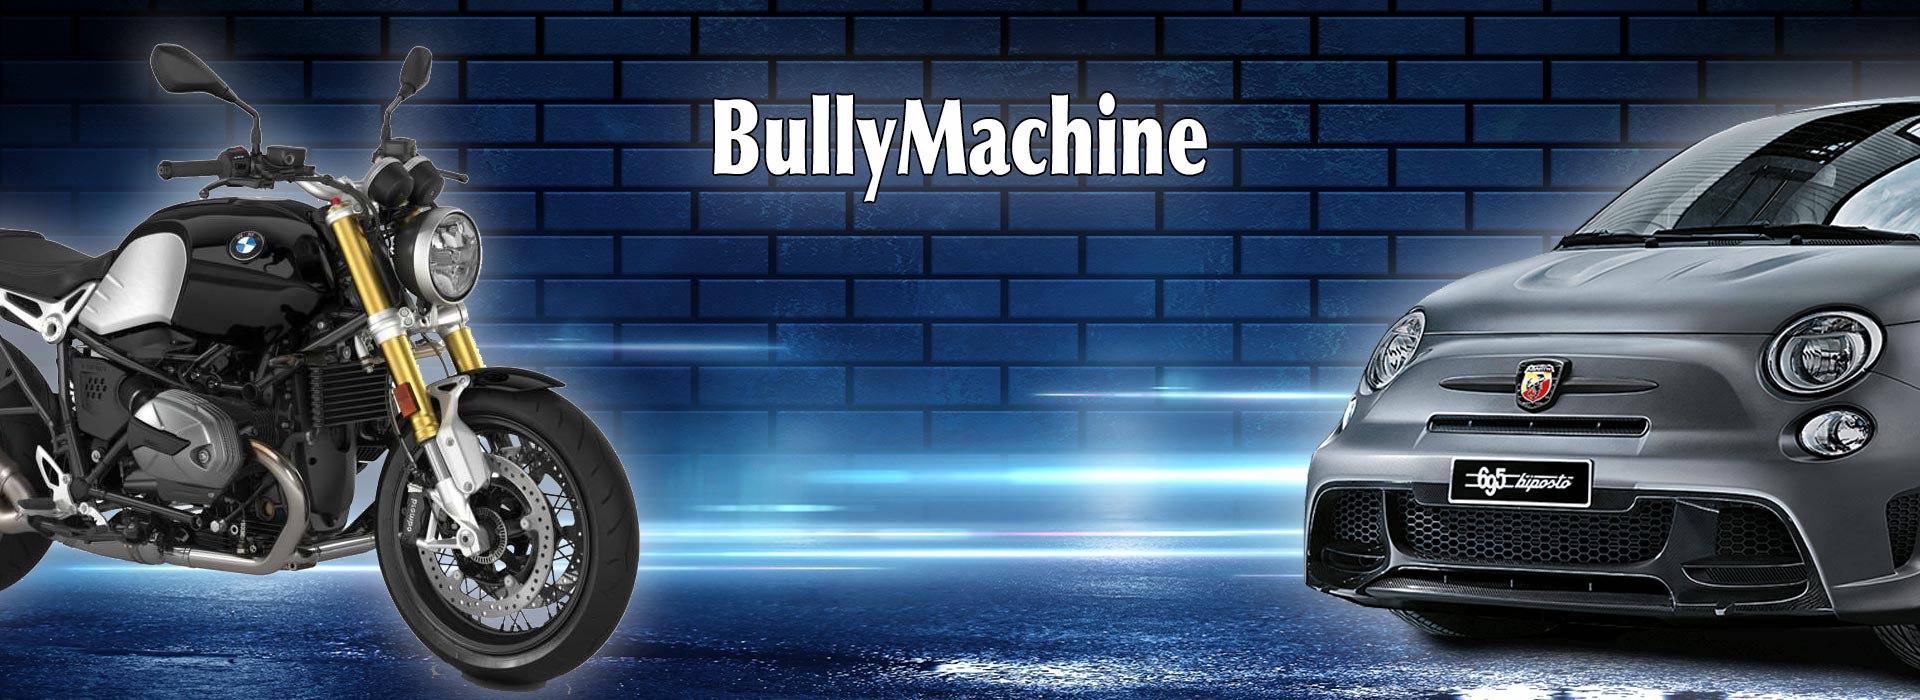 BullyMachine - Chi siamo